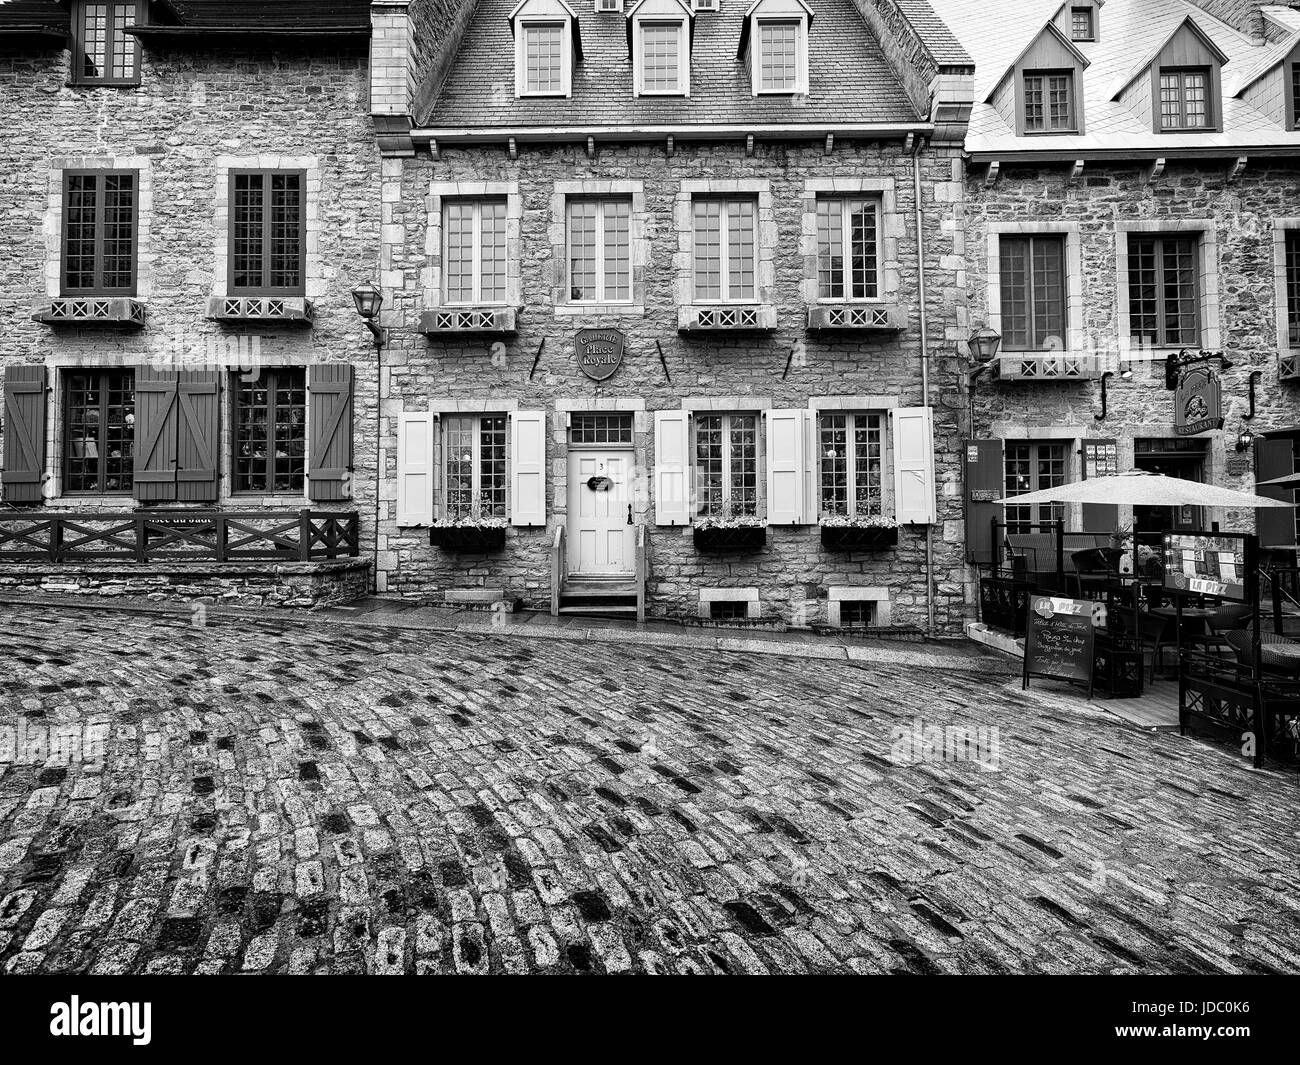 Licenza e stampe a MaximImages.com - bella architettura storica, case in stile francese nella città vecchia di Quebec. Foto Stock